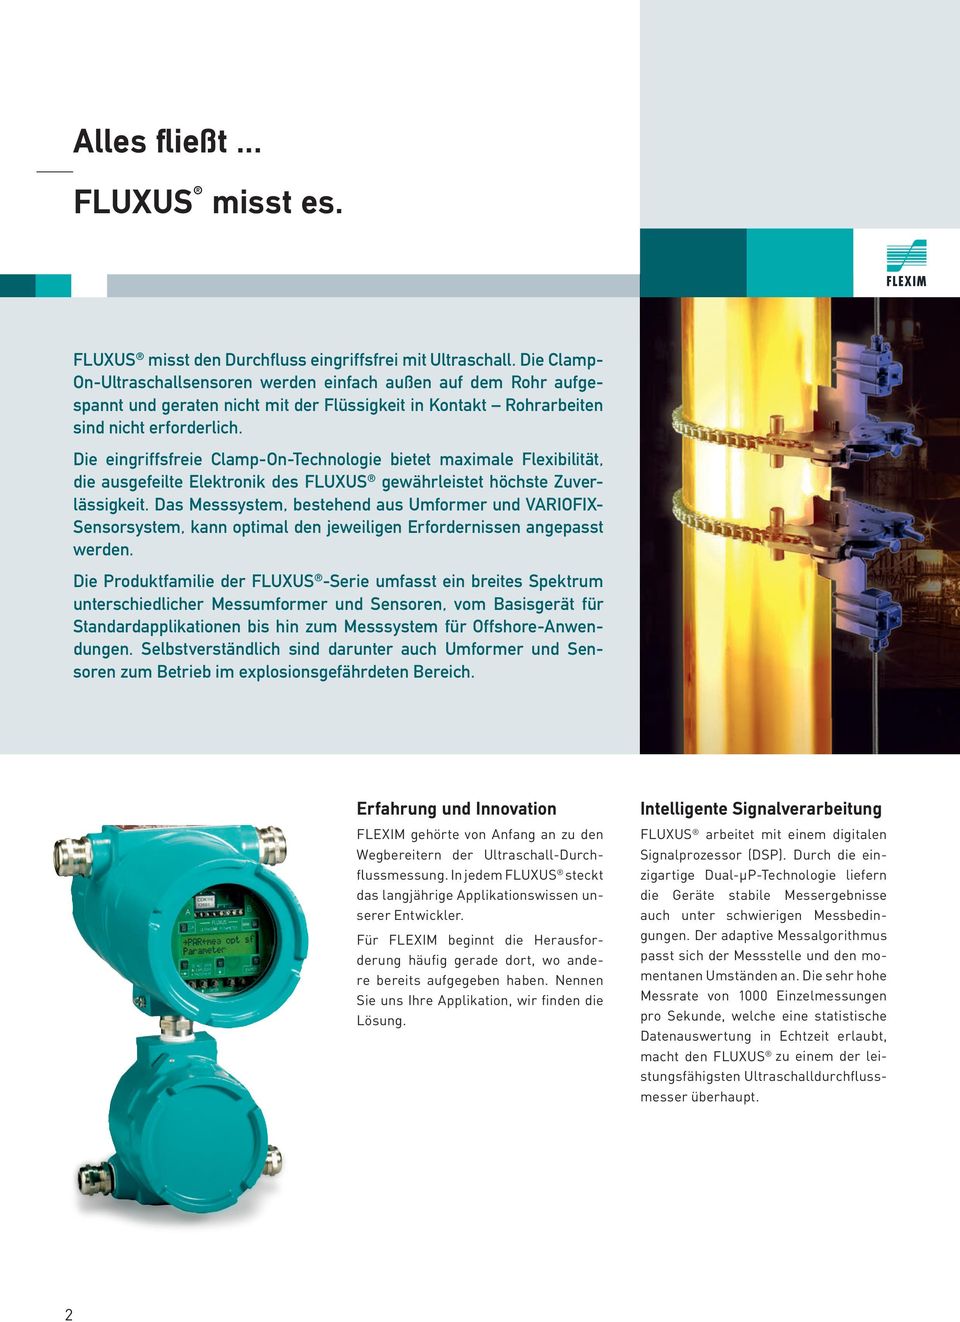 Die eingriffsfreie Clamp-On-Technologie bietet maximale Flexibilität, die ausgefeilte Elektronik des FLUXUS gewährleistet höchste Zuverlässigkeit.